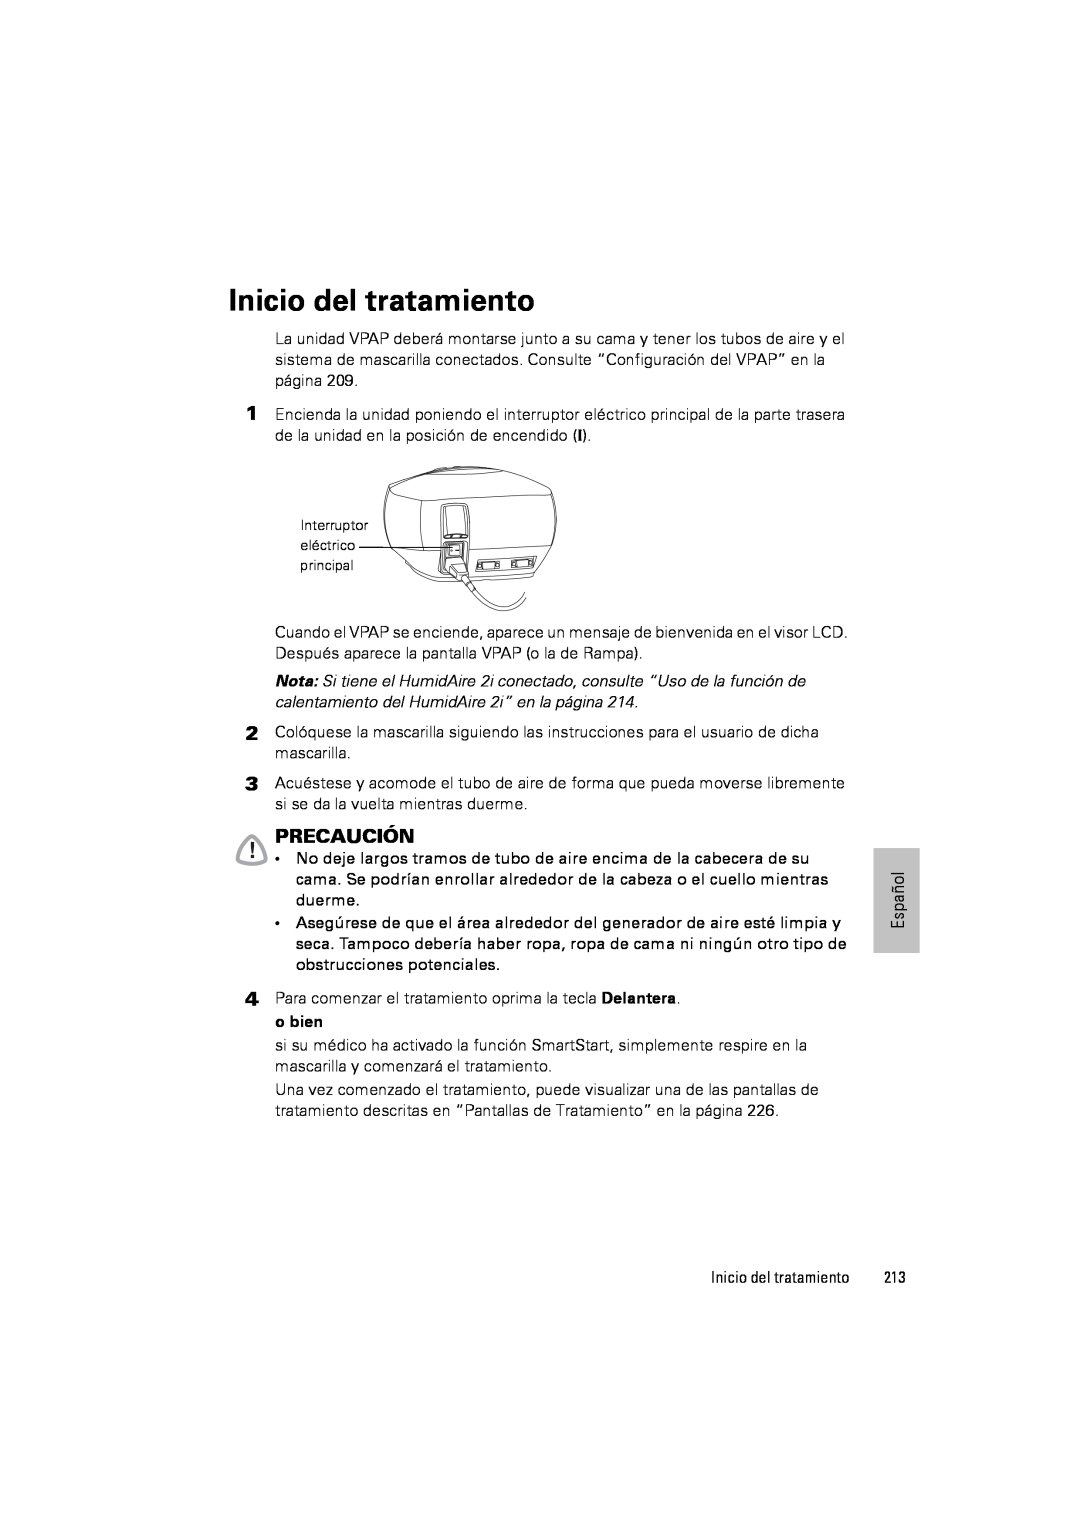 ResMed III & III ST user manual Inicio del tratamiento, Precaución 